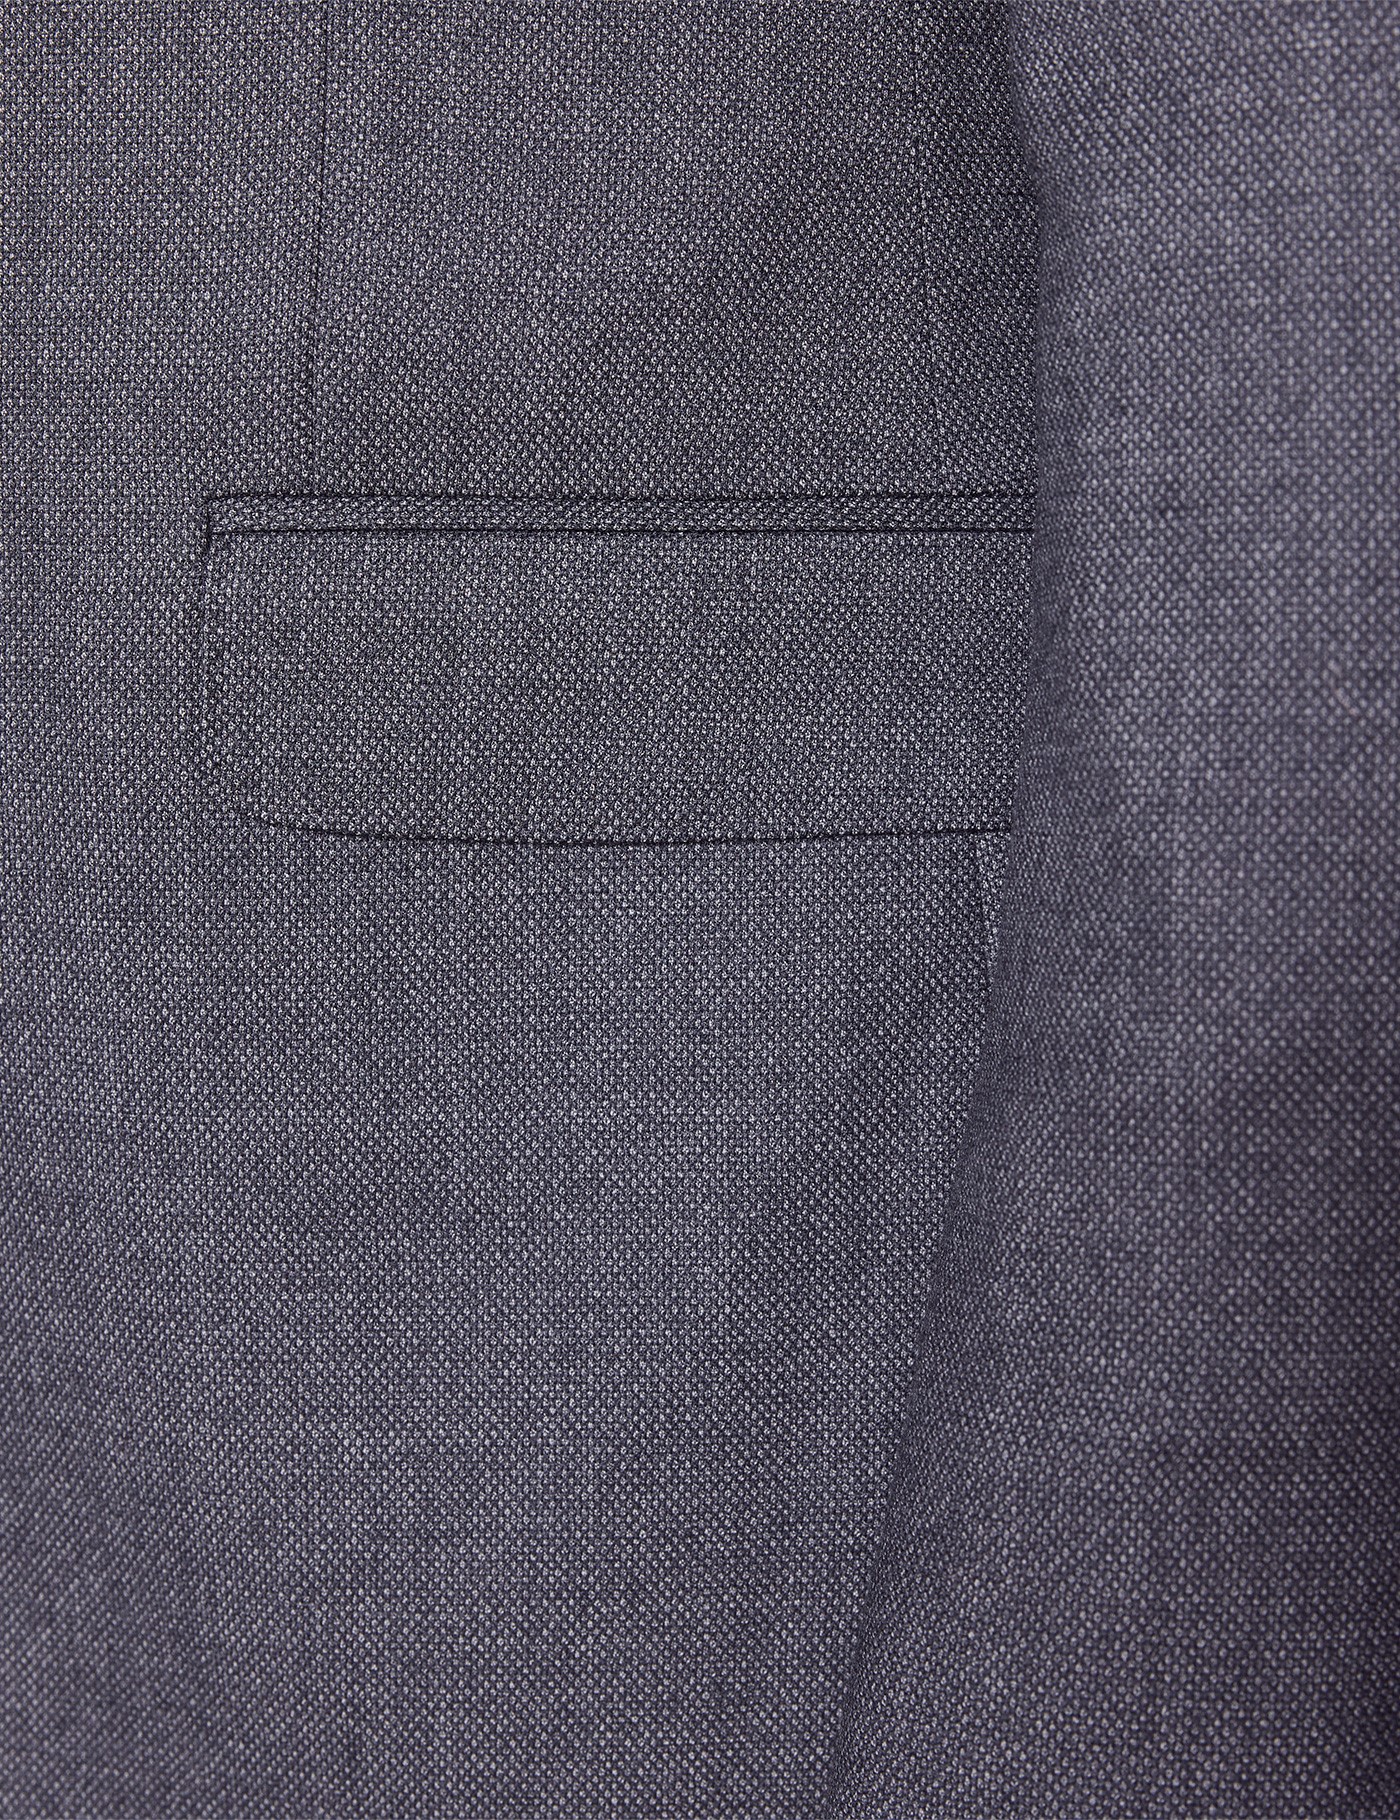 Men’s Grey Birdseye Plain 2 Piece Slim Fit Suit | Hawes & Curtis